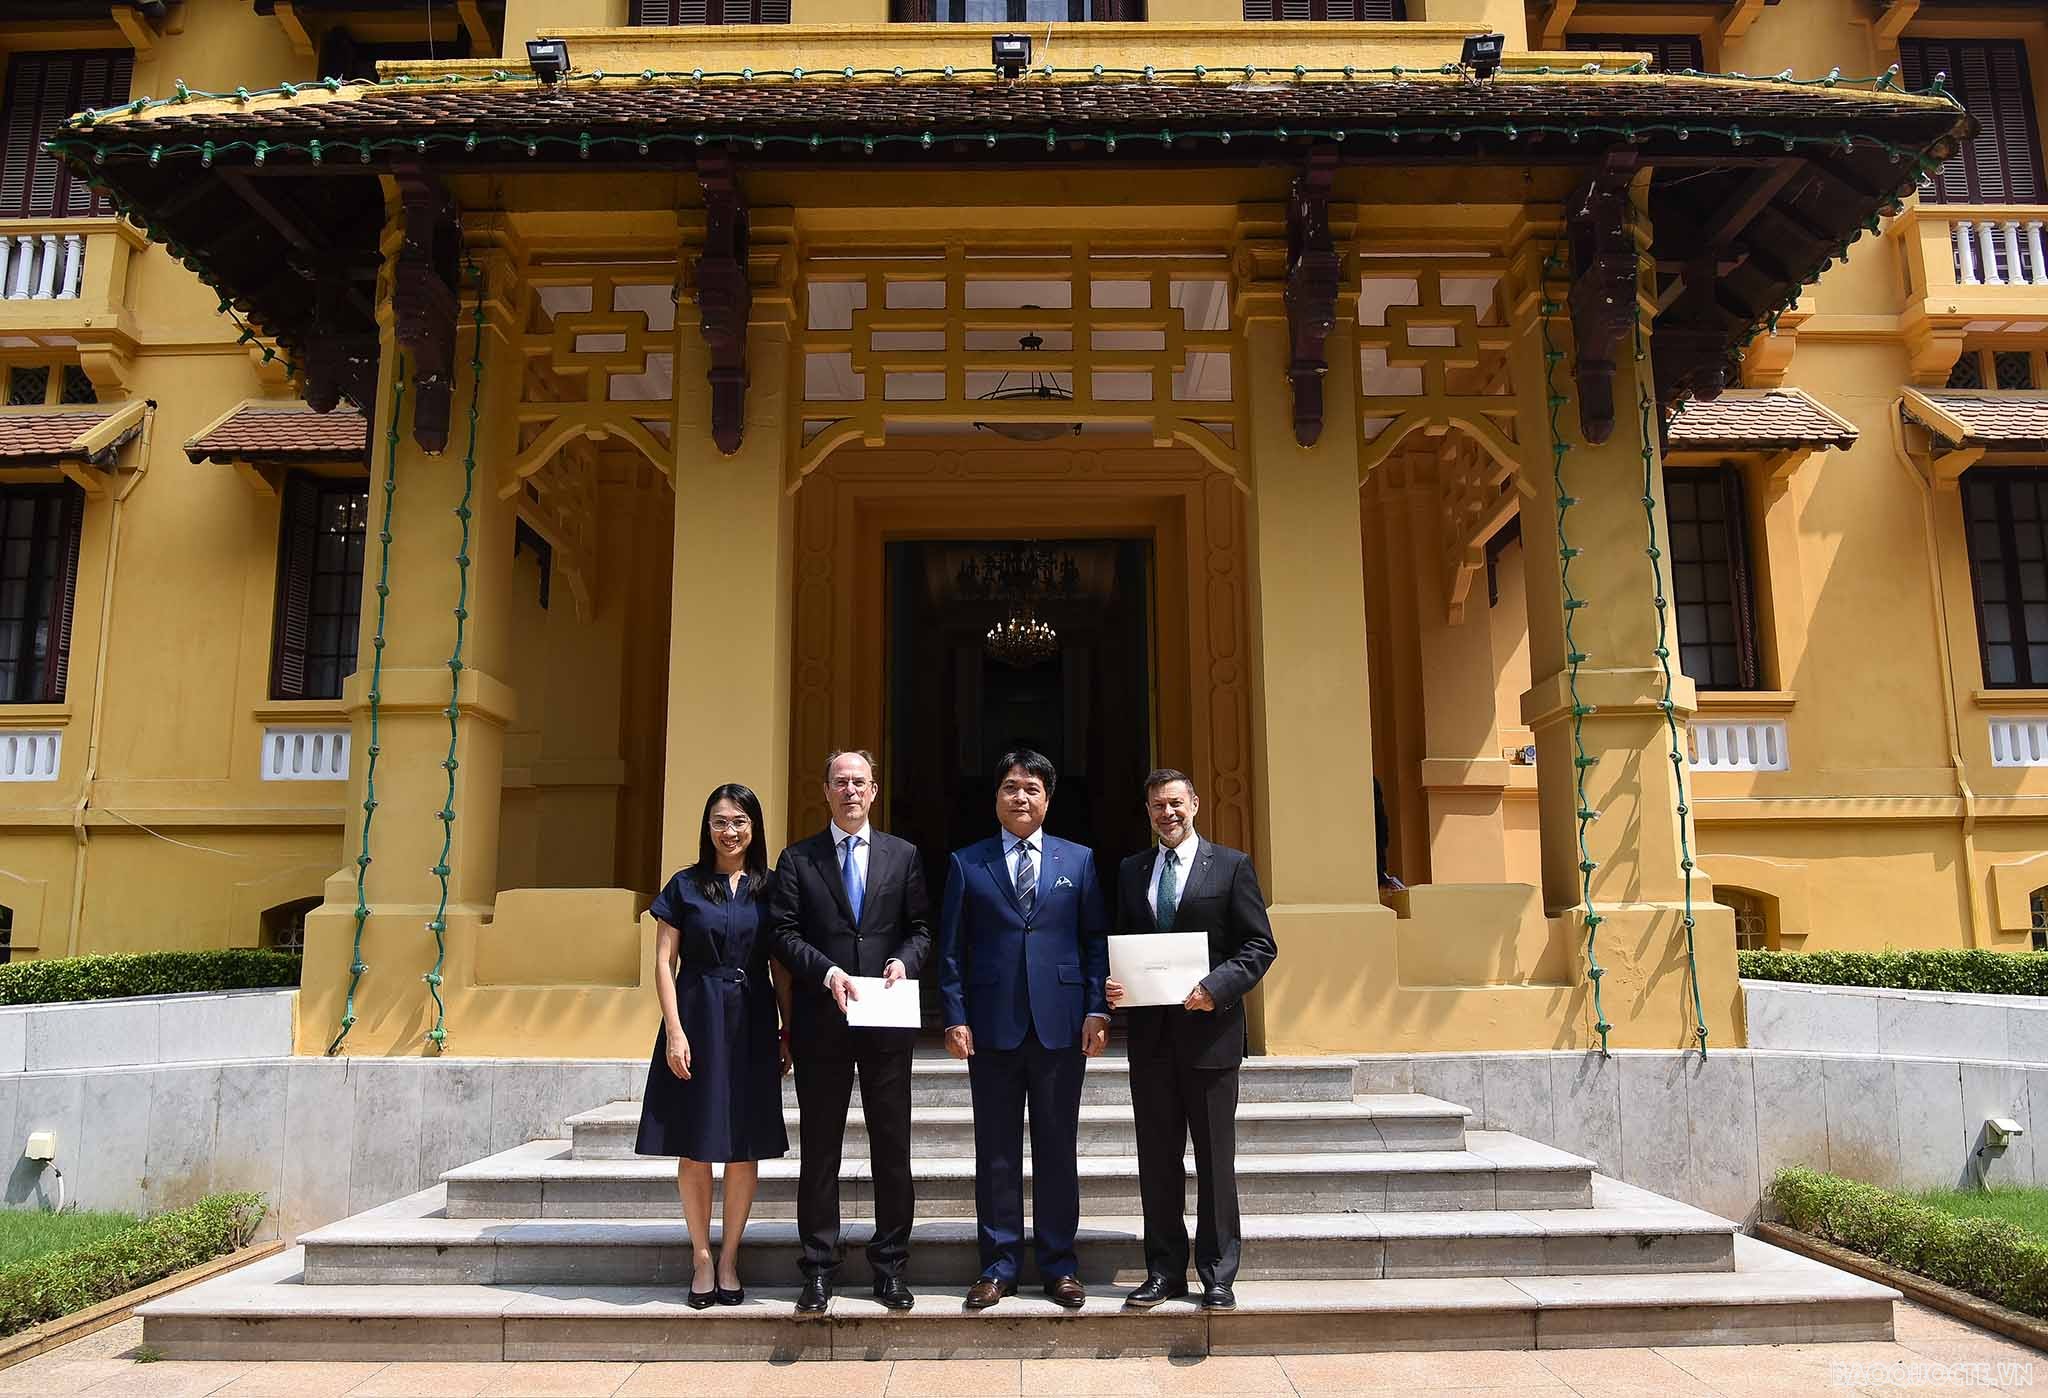 Cục trưởng Cục lễ tân tiếp các Đại sứ Luxembourg và Australia trao bản sao Thư ủy nhiệm